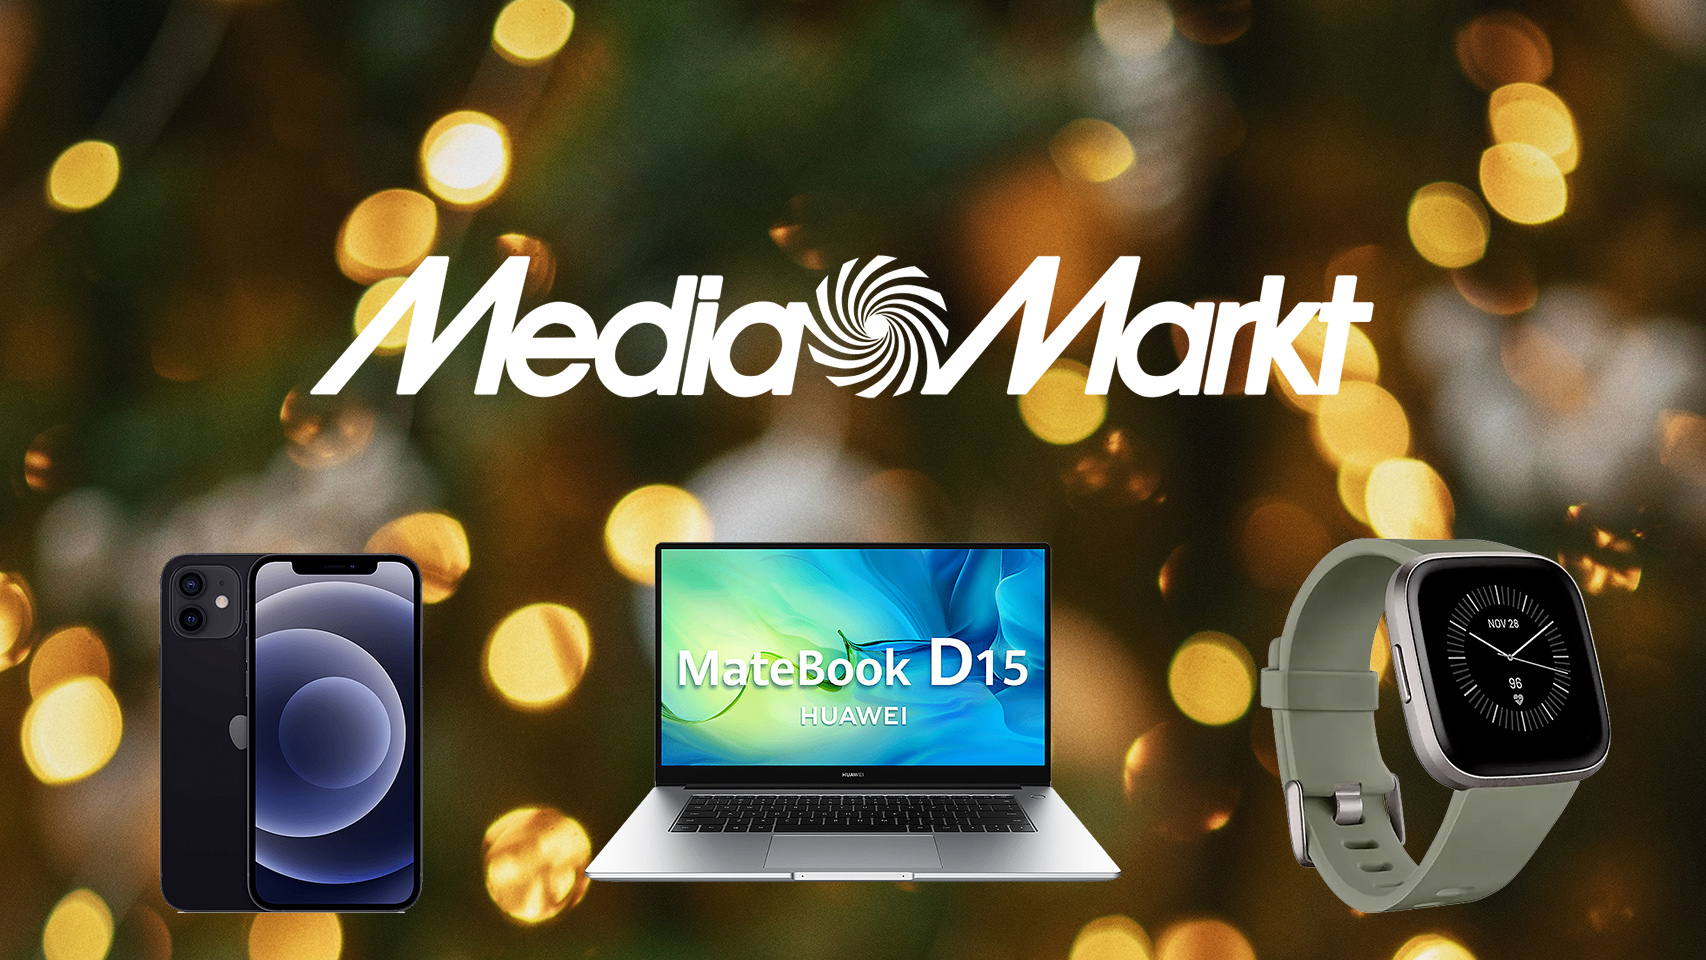 Ofertas de Media Markt por navidad.